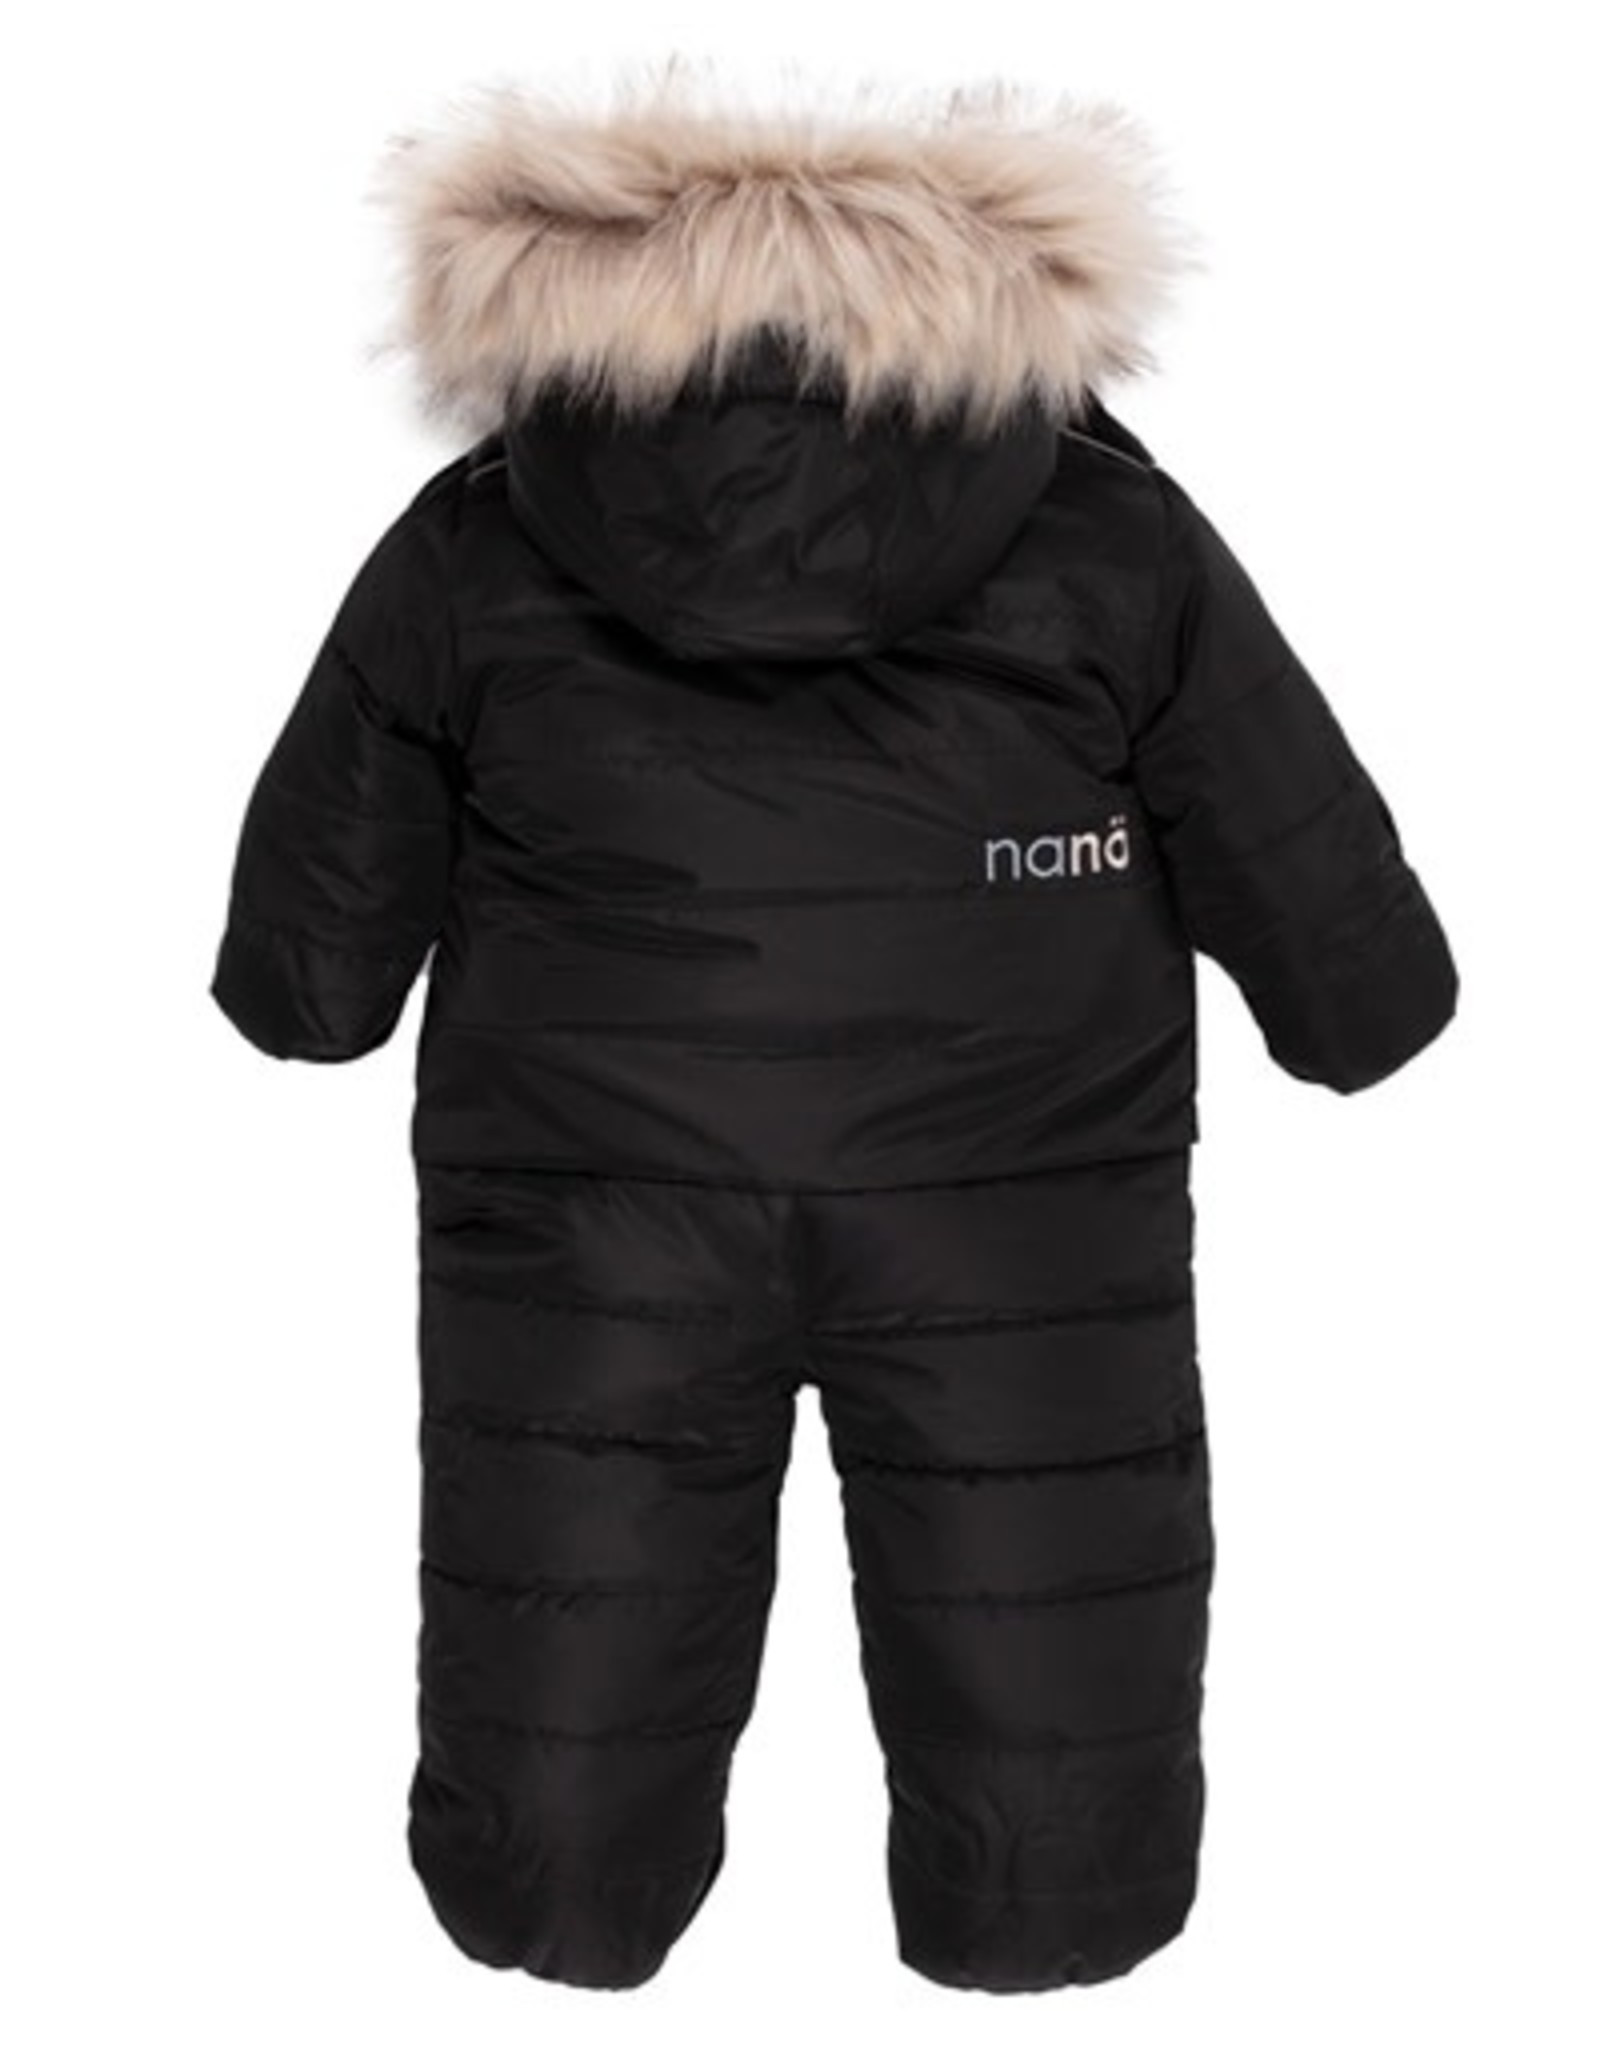 Noruk Black Snowsuit with Faux Fur Hood (9M)